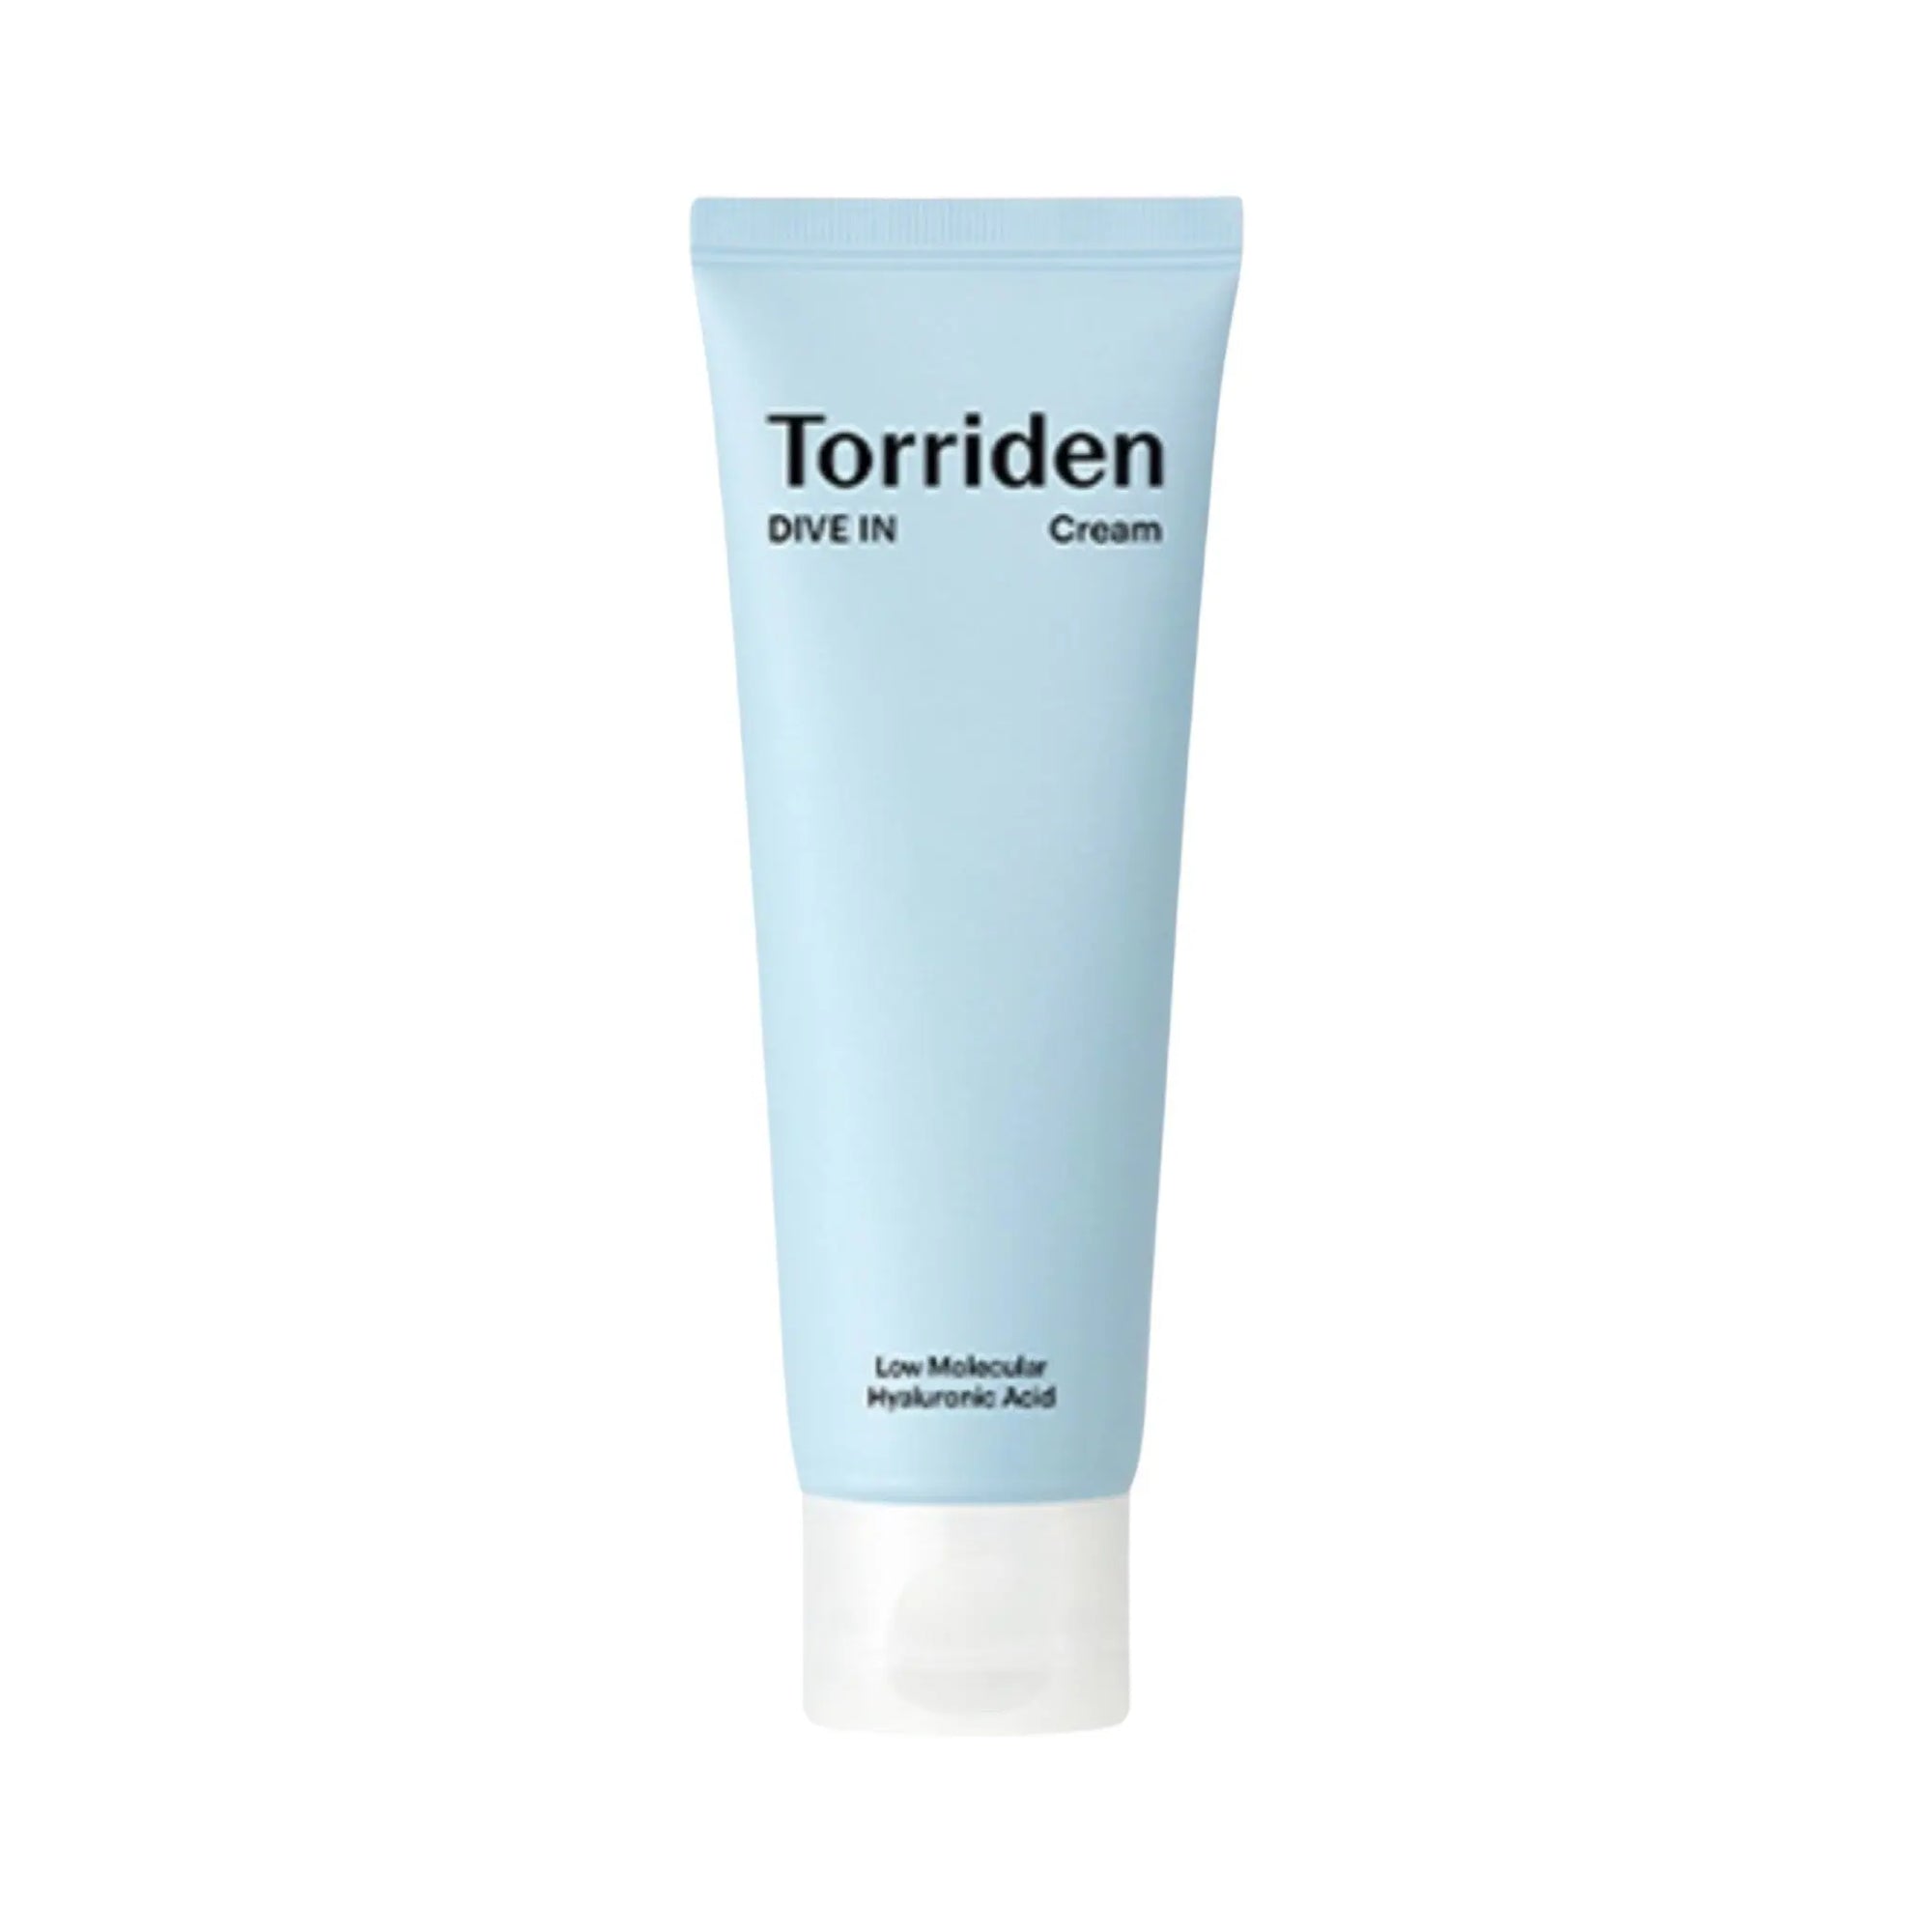 Torriden -Dive-In Low Molecular Hyaluronic Acid Cream 80mL Torriden